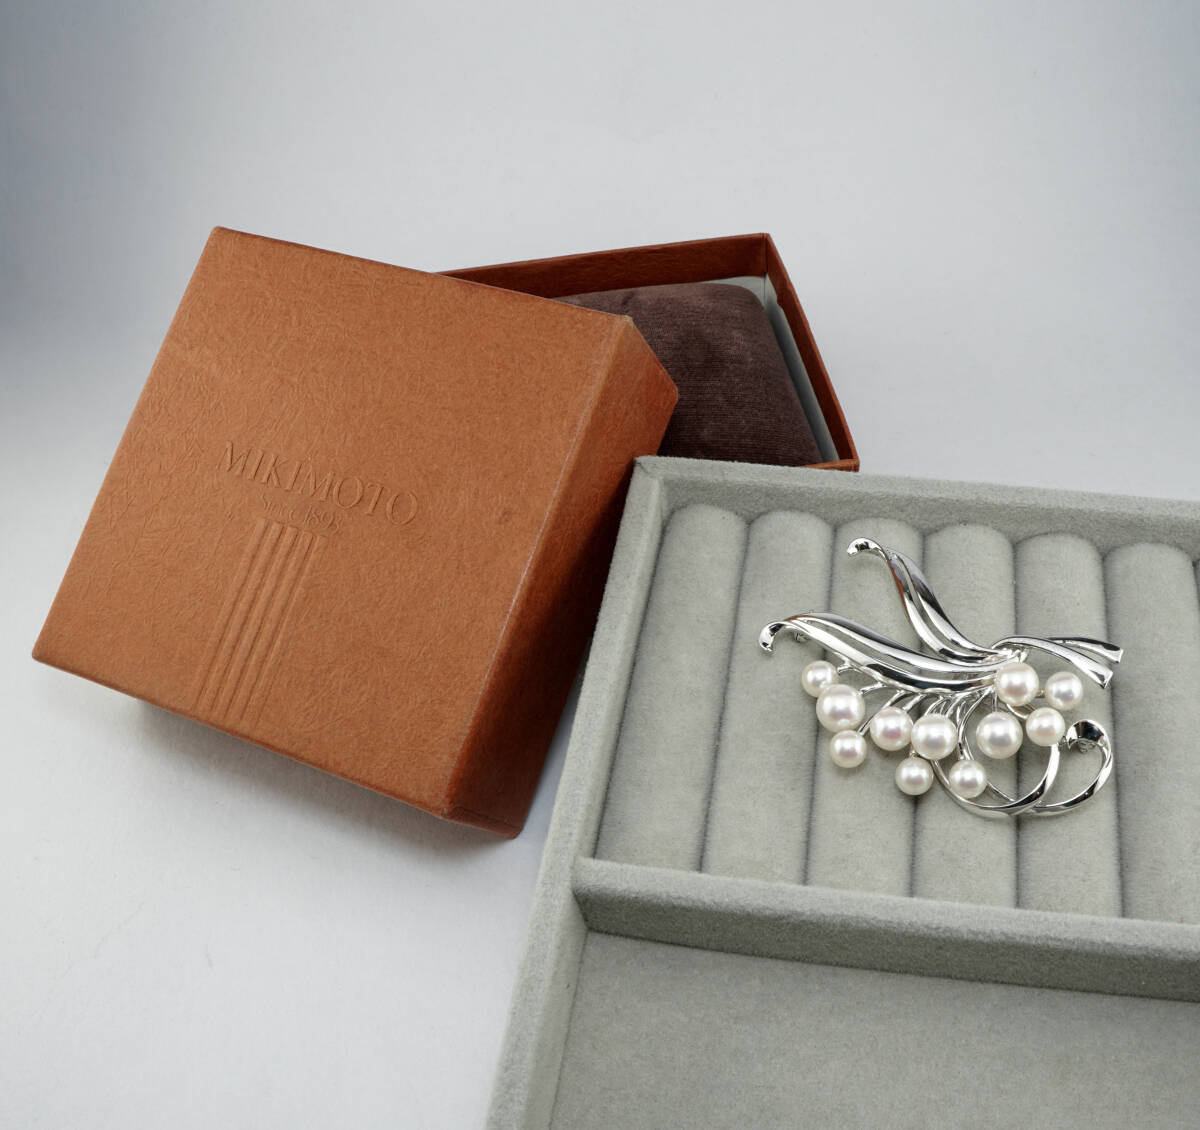 *MIKIMOTO Mikimoto Akoya жемчуг высший класс 5.5mmUP SV брошь с коробкой ювелирные изделия jewelry